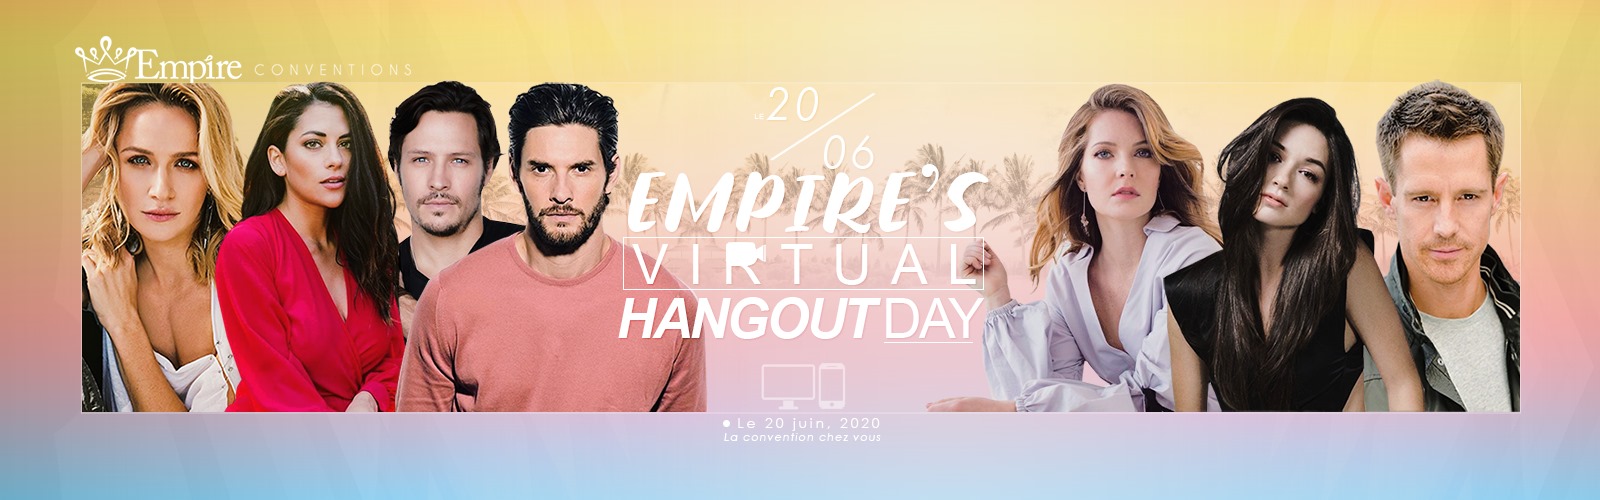 Empire's Virtual Hangout Day